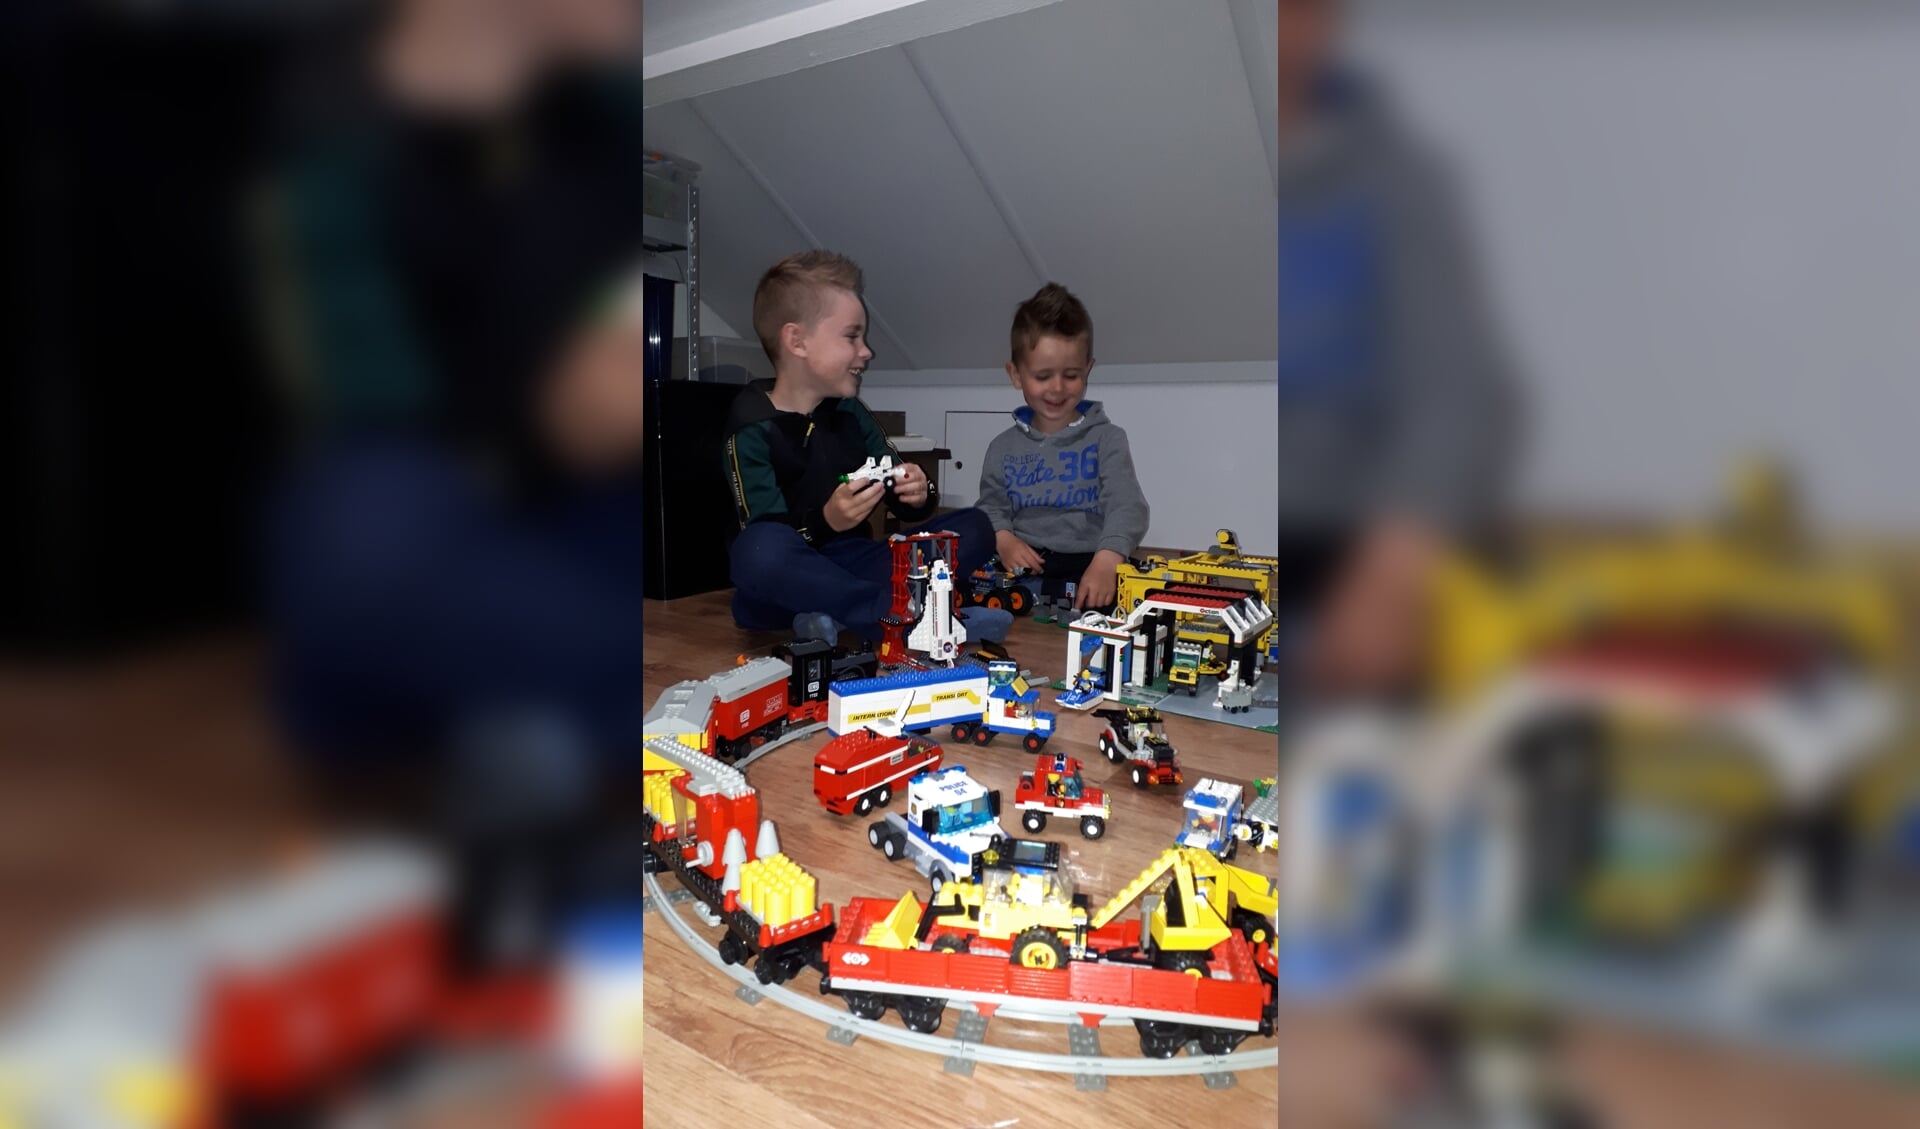 Teun en Mats van Beek vermaken zich op hun Lego-zolder.